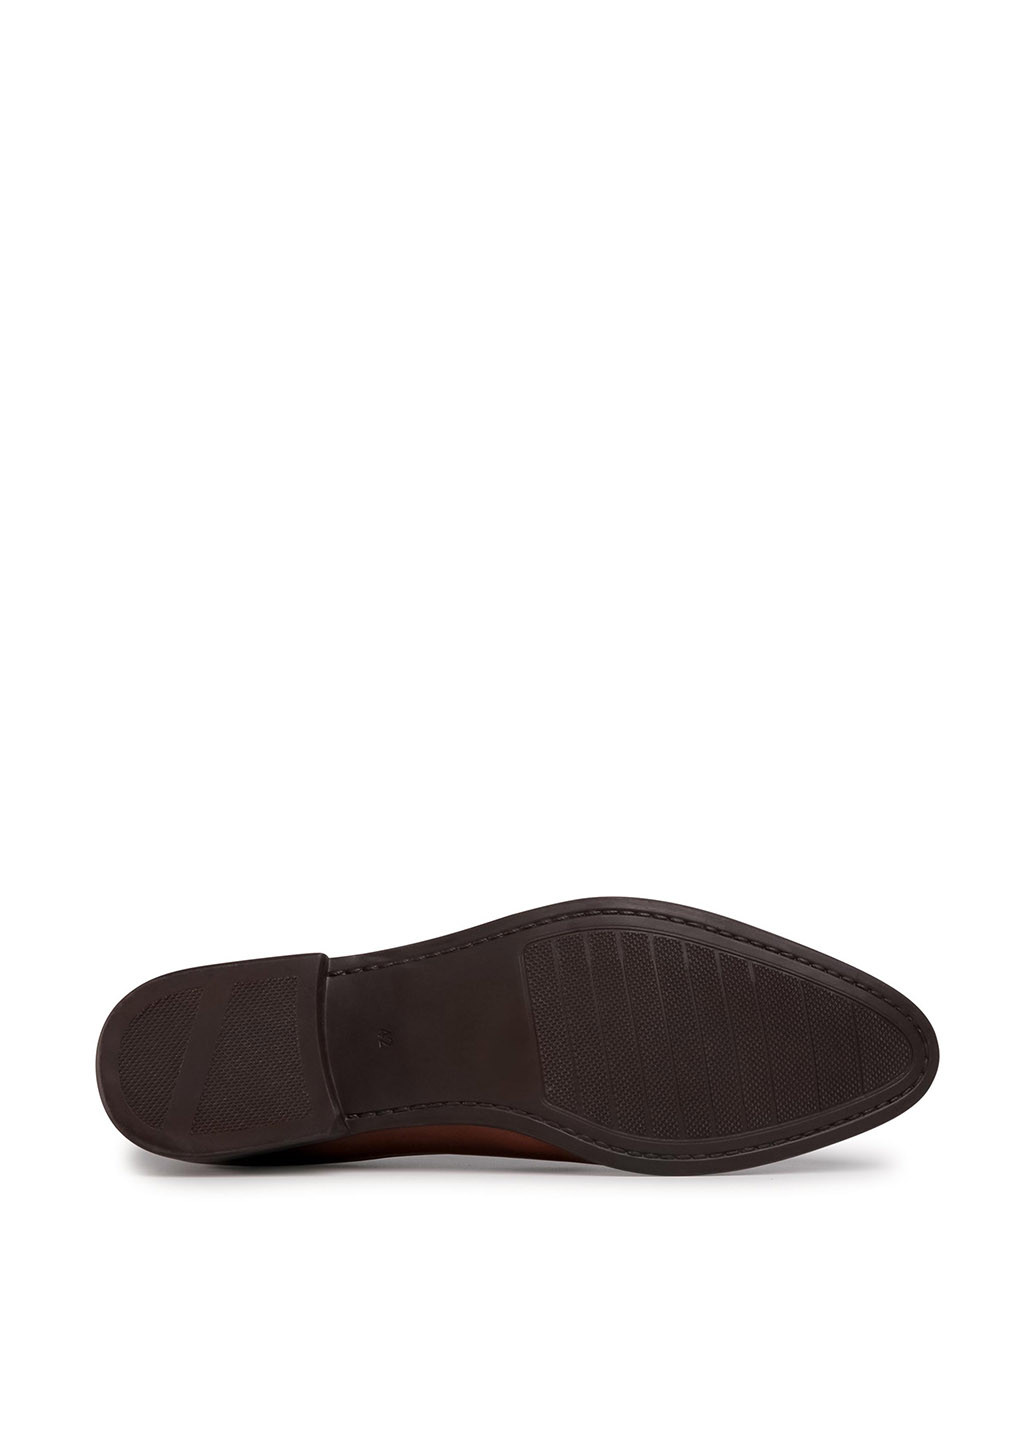 Темно-коричневые кэжуал напівчеревики lasocki for men mi08-c770-768-01 Lasocki for men на шнурках